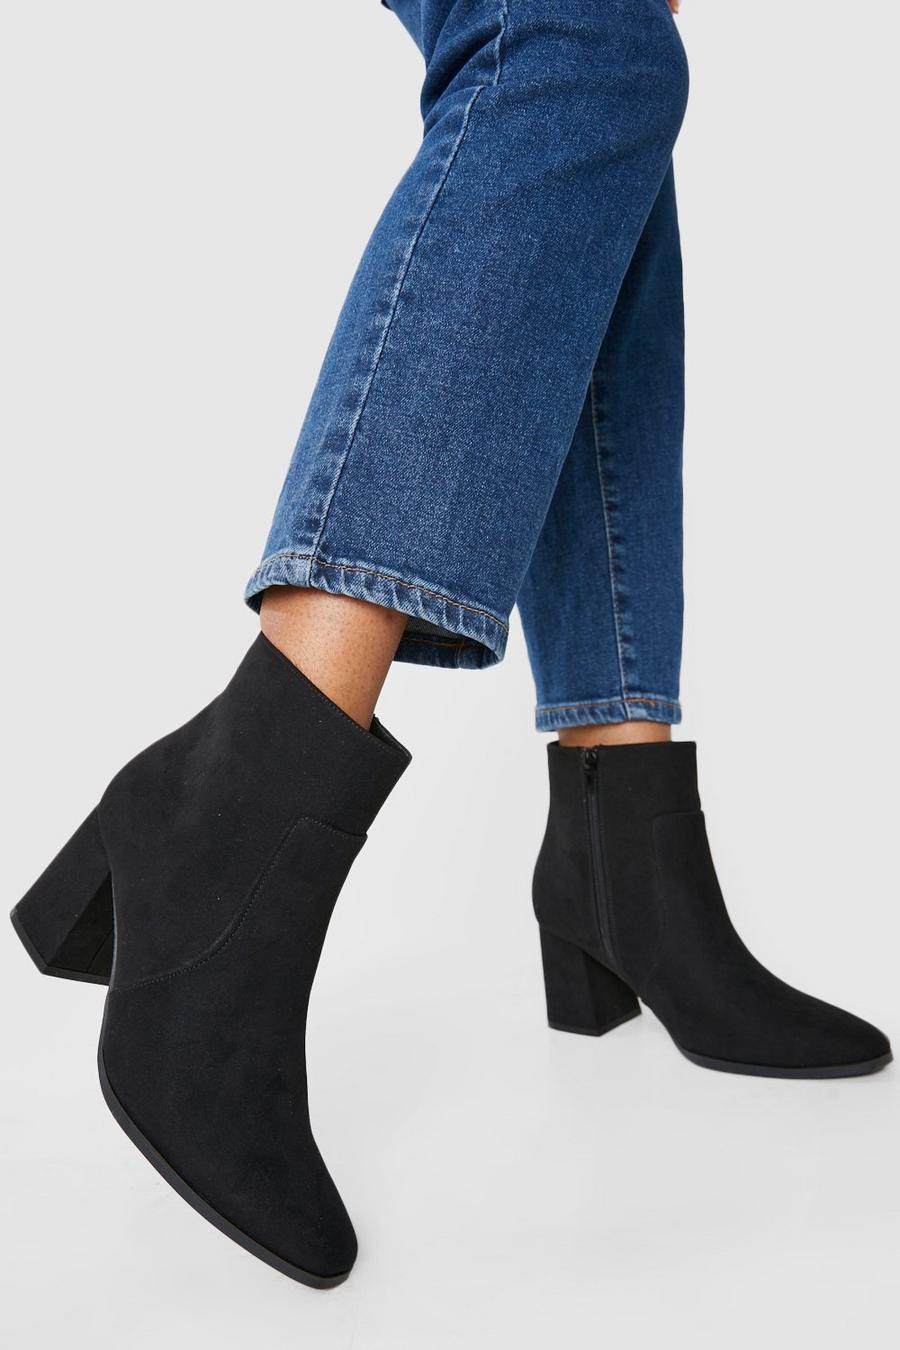 Black Wide Width Block Heel Shoe Boots